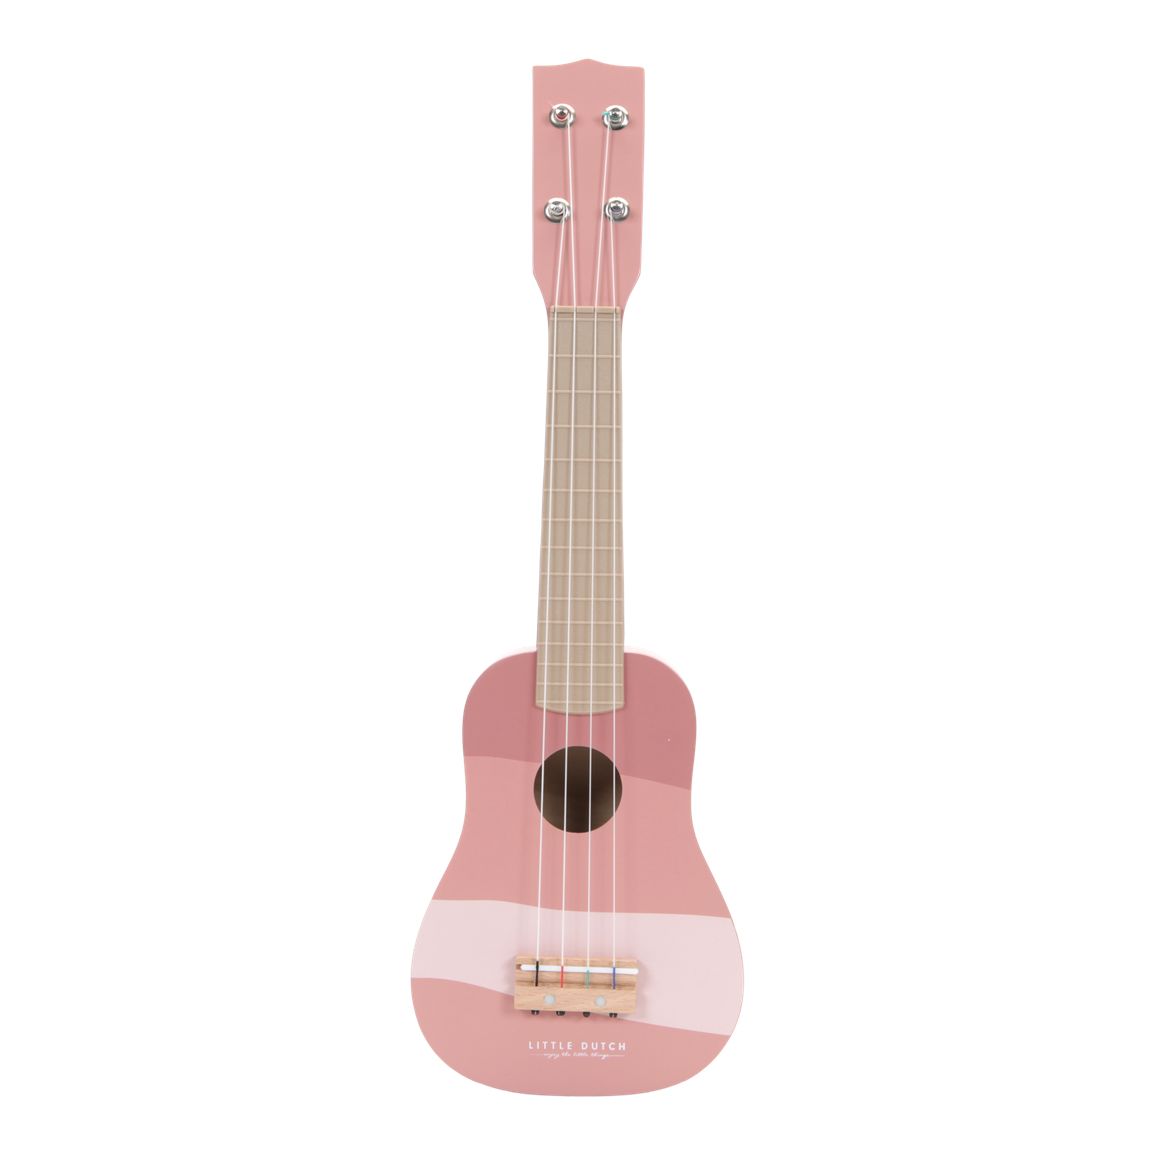 Gitara Pink